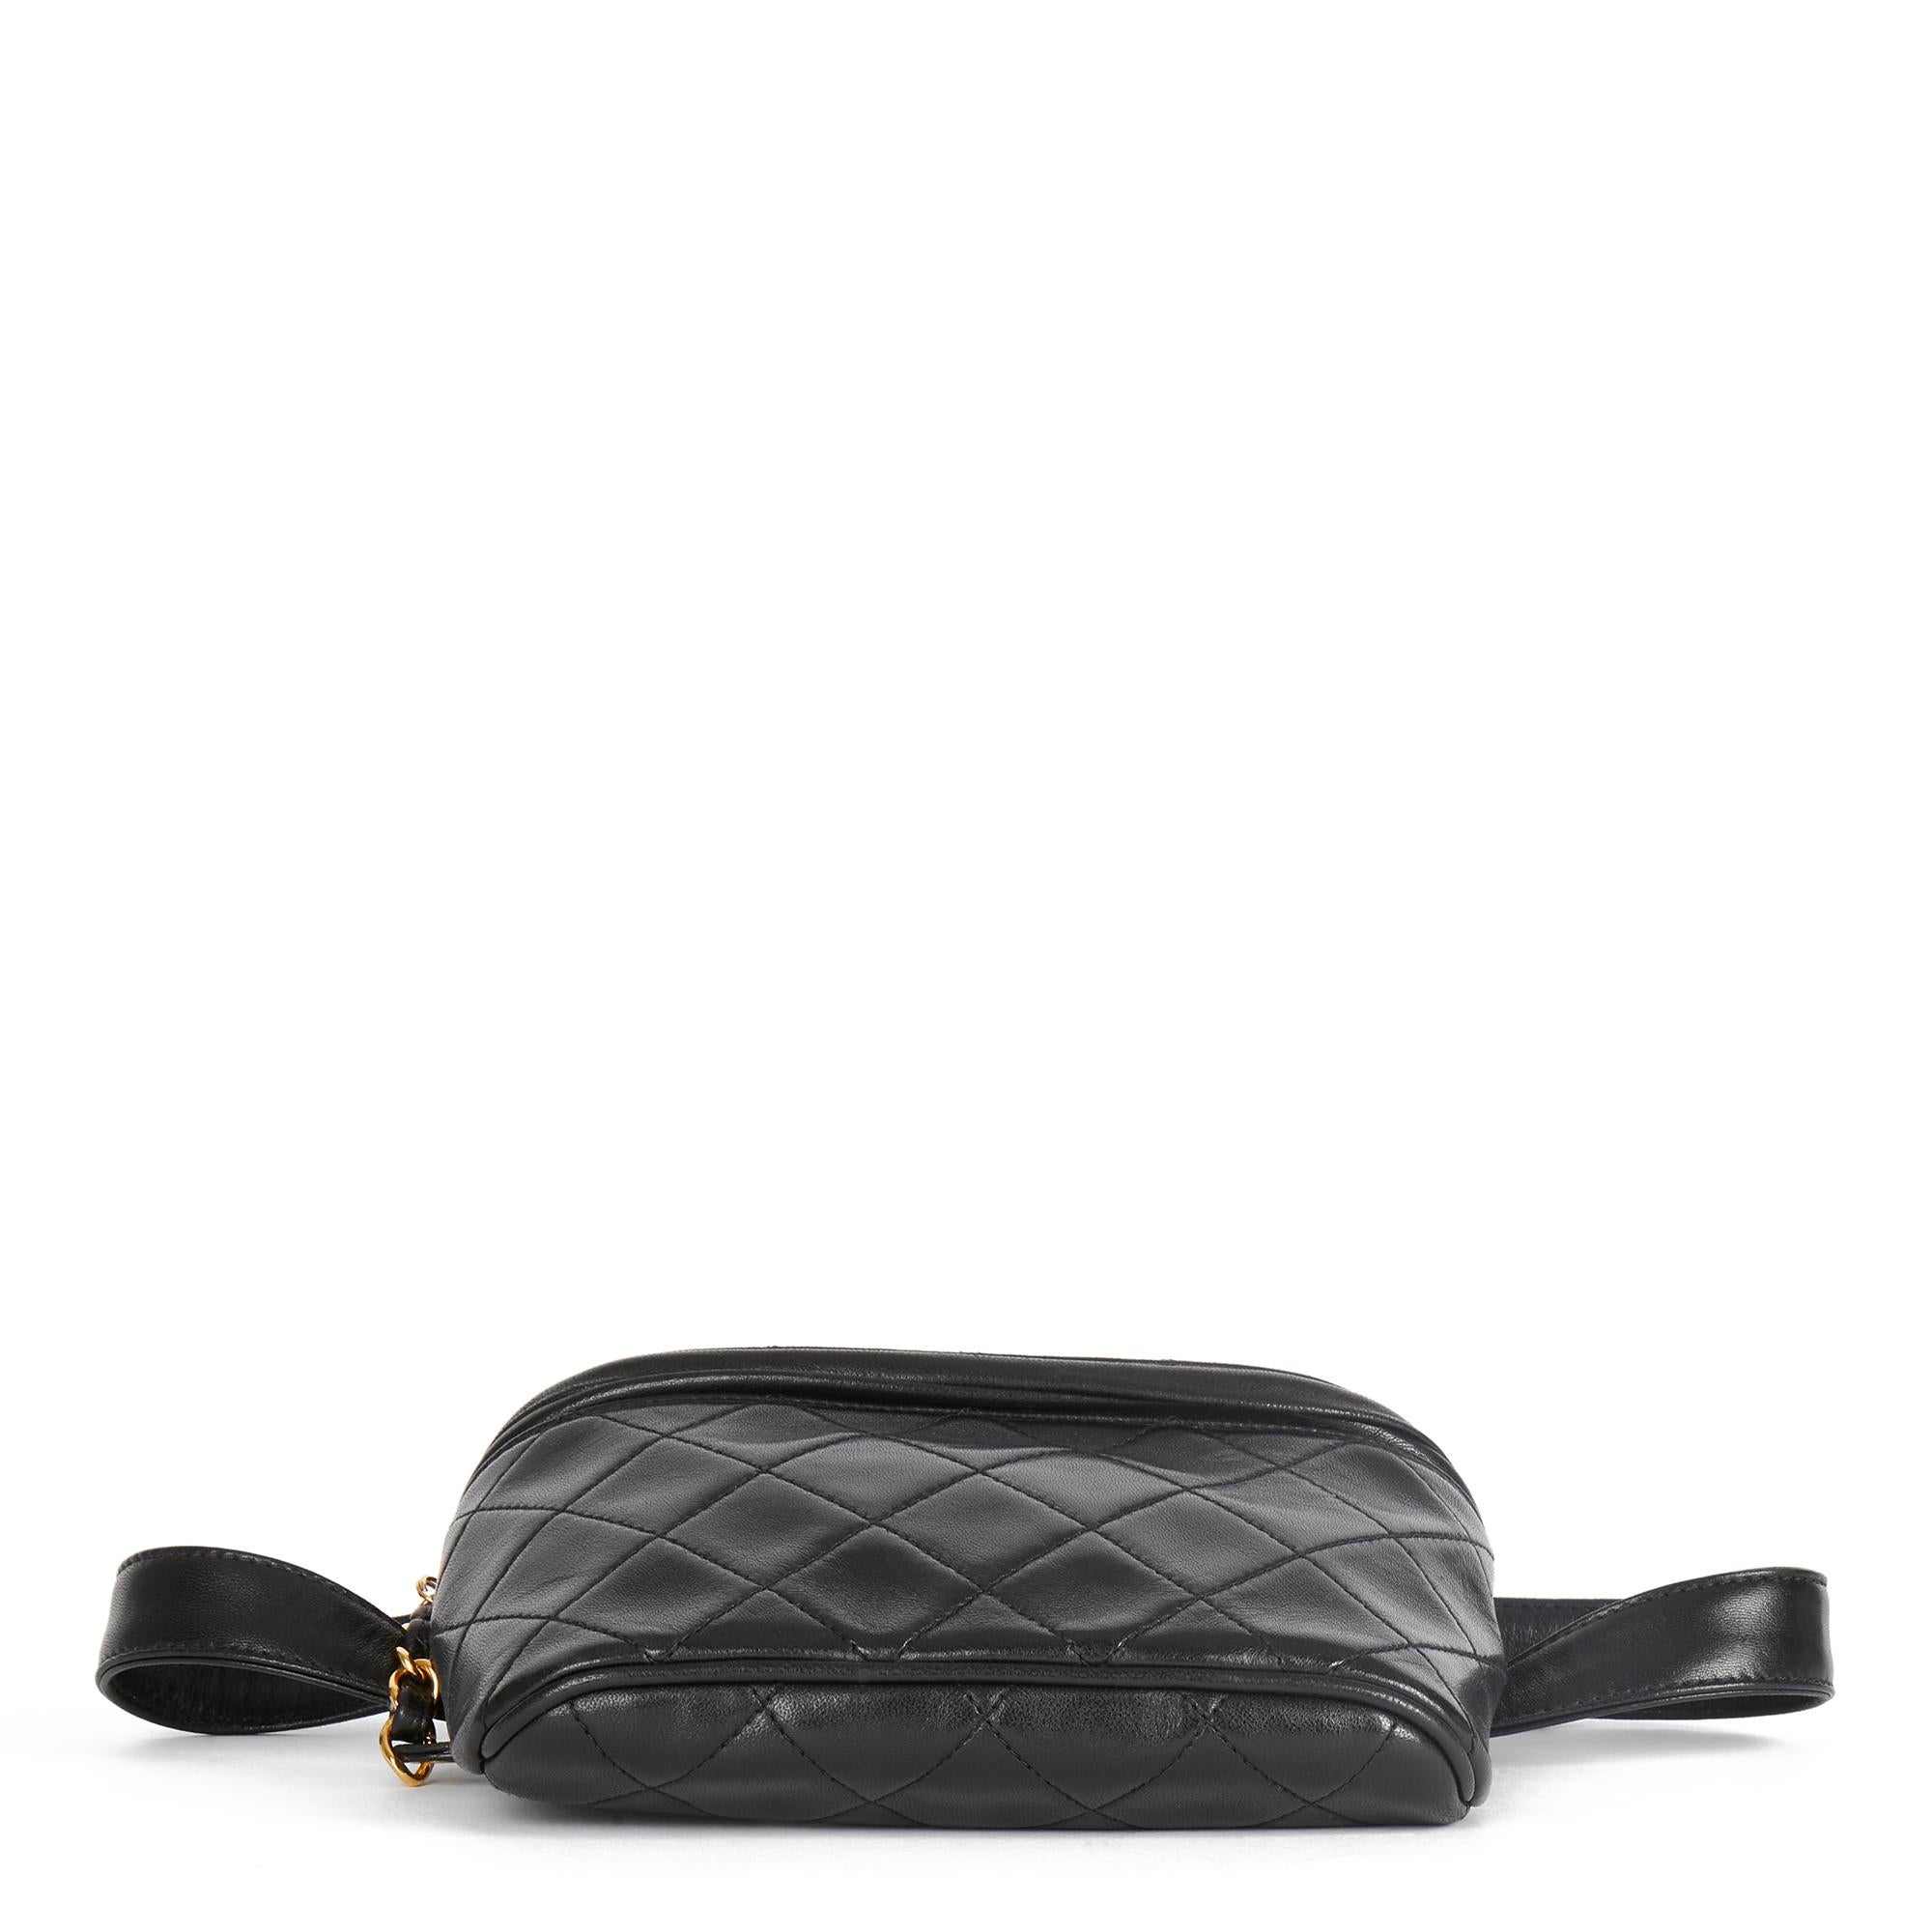 1996 Chanel Black Quilted Lambskin Vintage Timeless Belt Bag 1